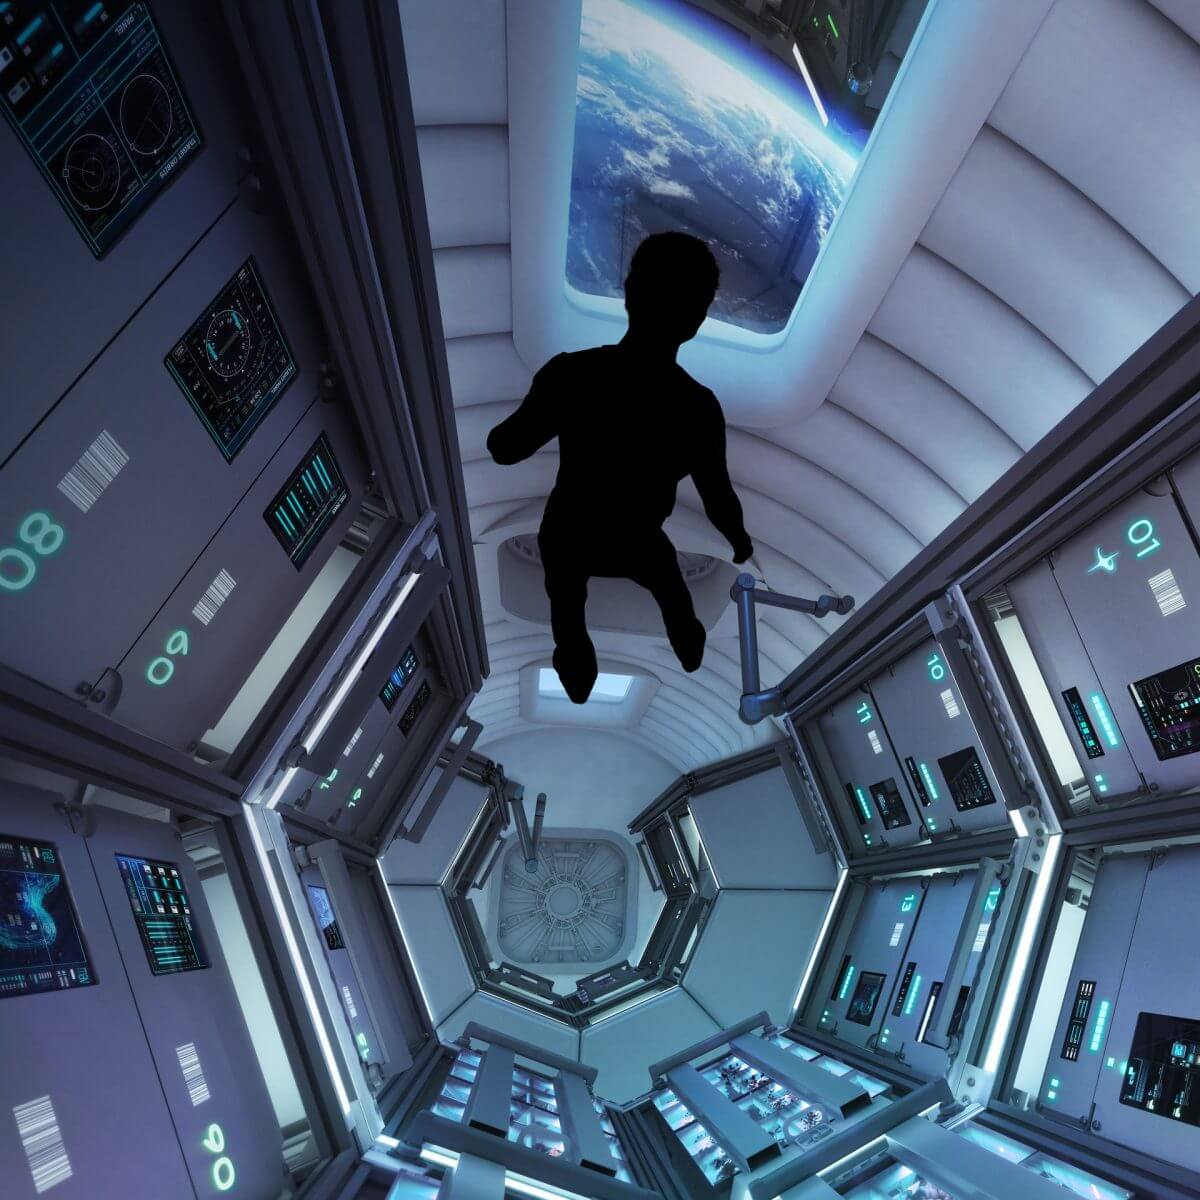  商用宇宙ステーション「オービタル・リーフ」の内部を描いた想像図（Credit: Blue Origin）